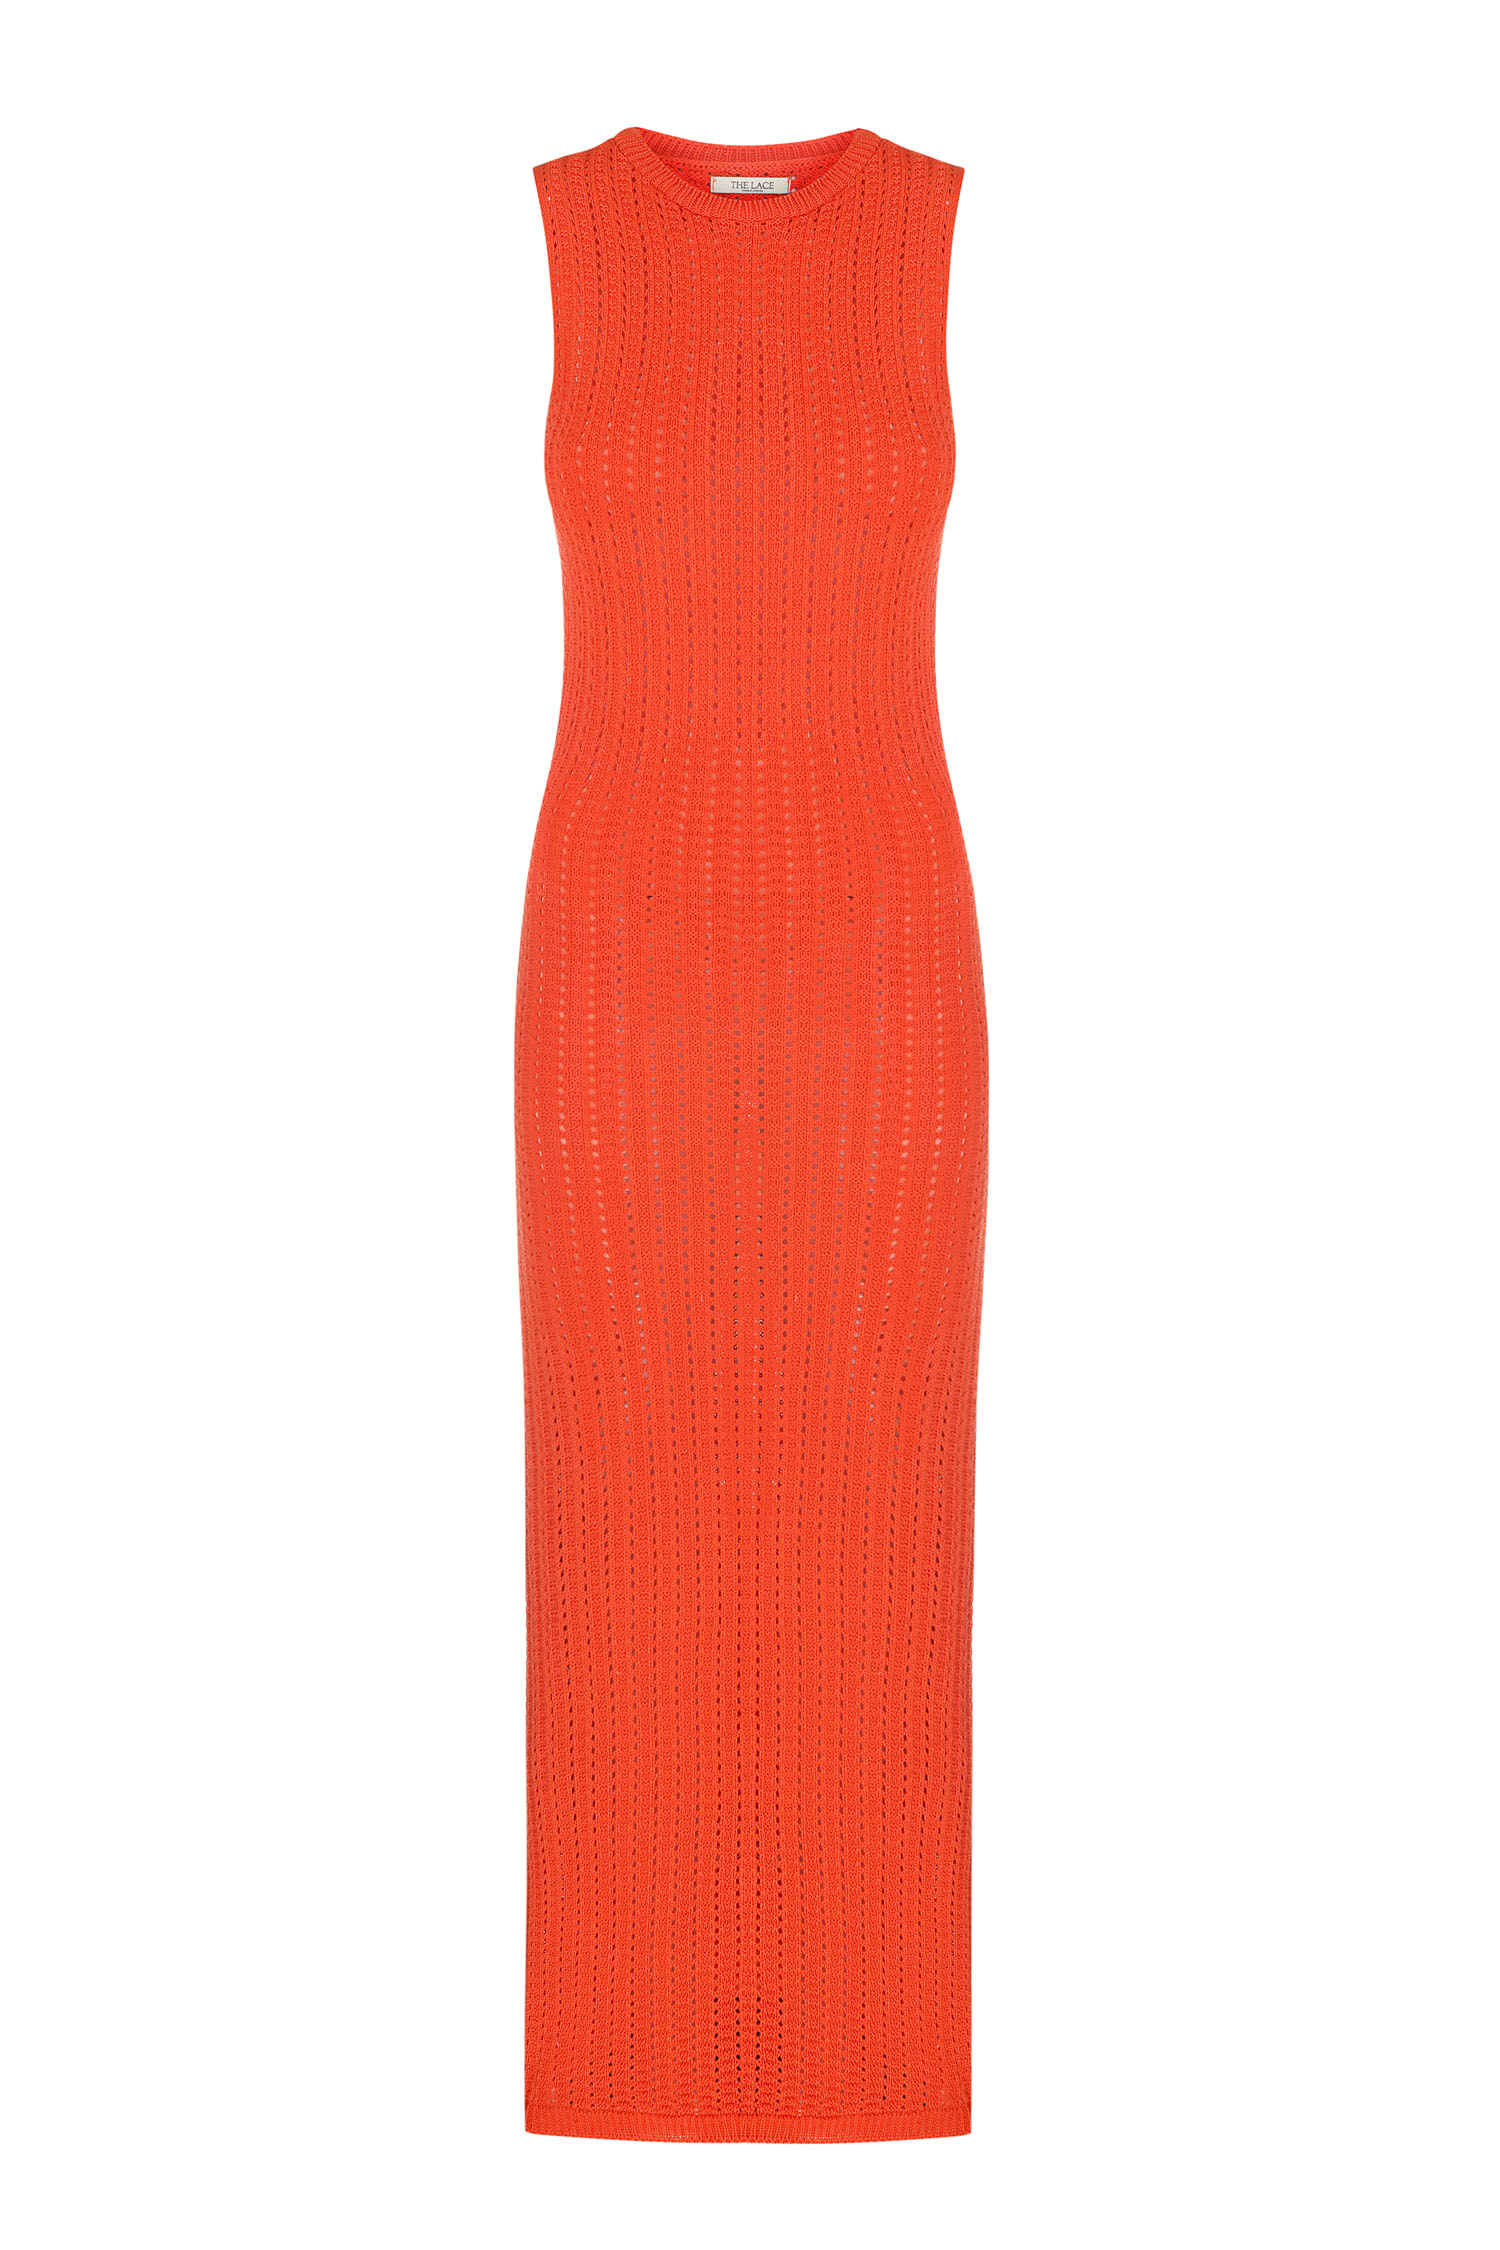 Трикотажна сукня максі з ажурною вʼязкою помаранчева - THE LACE фото 152680